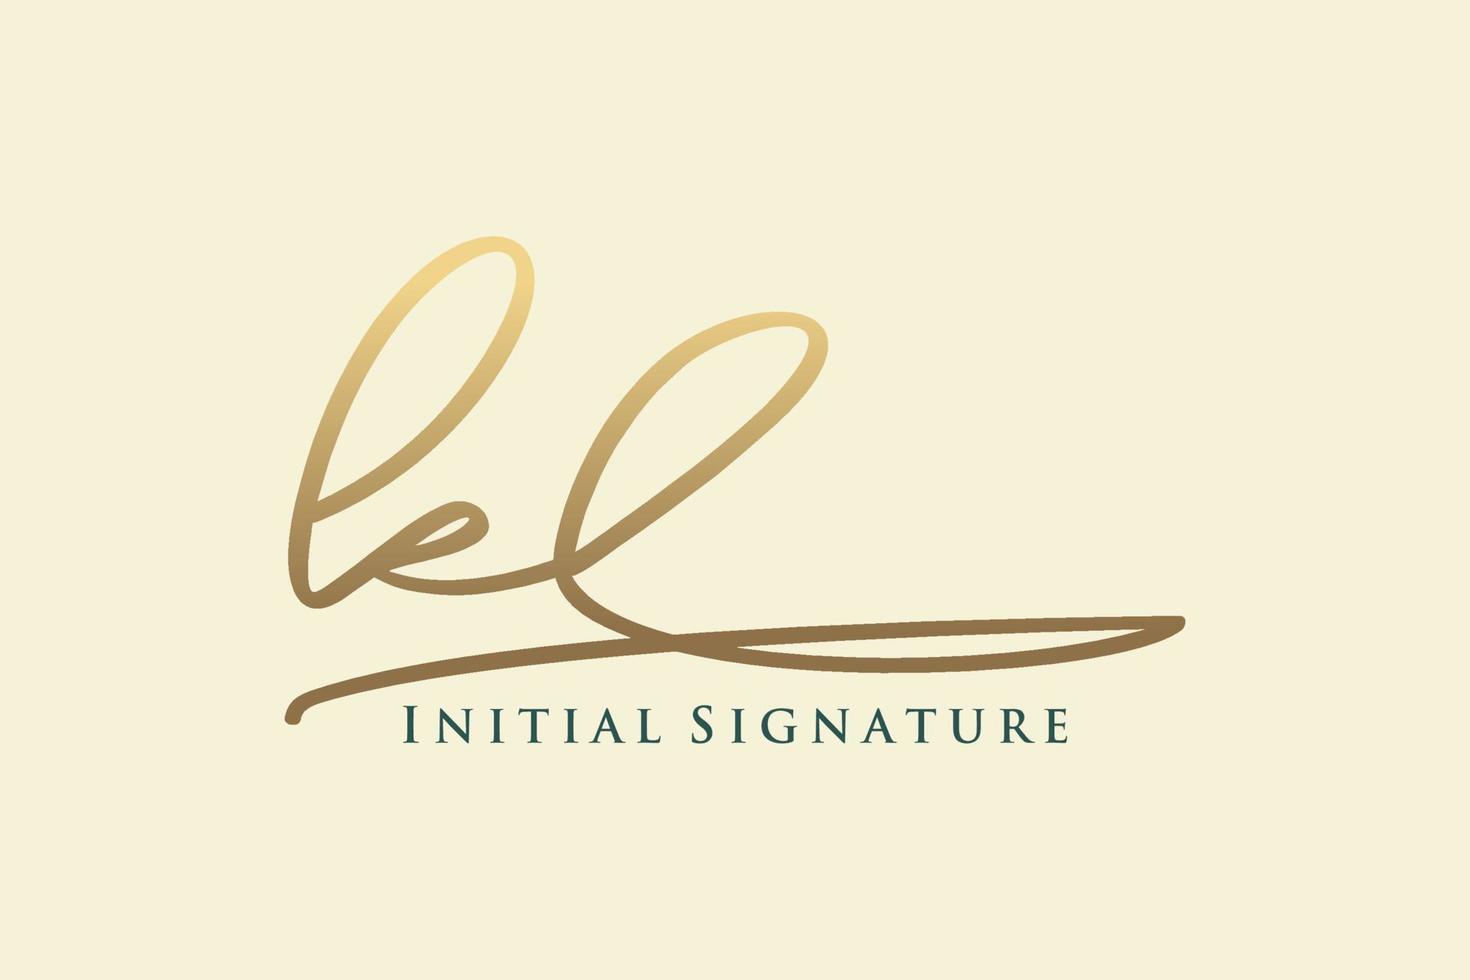 eerste kl brief handtekening logo sjabloon elegant ontwerp logo. hand- getrokken schoonschrift belettering vector illustratie.